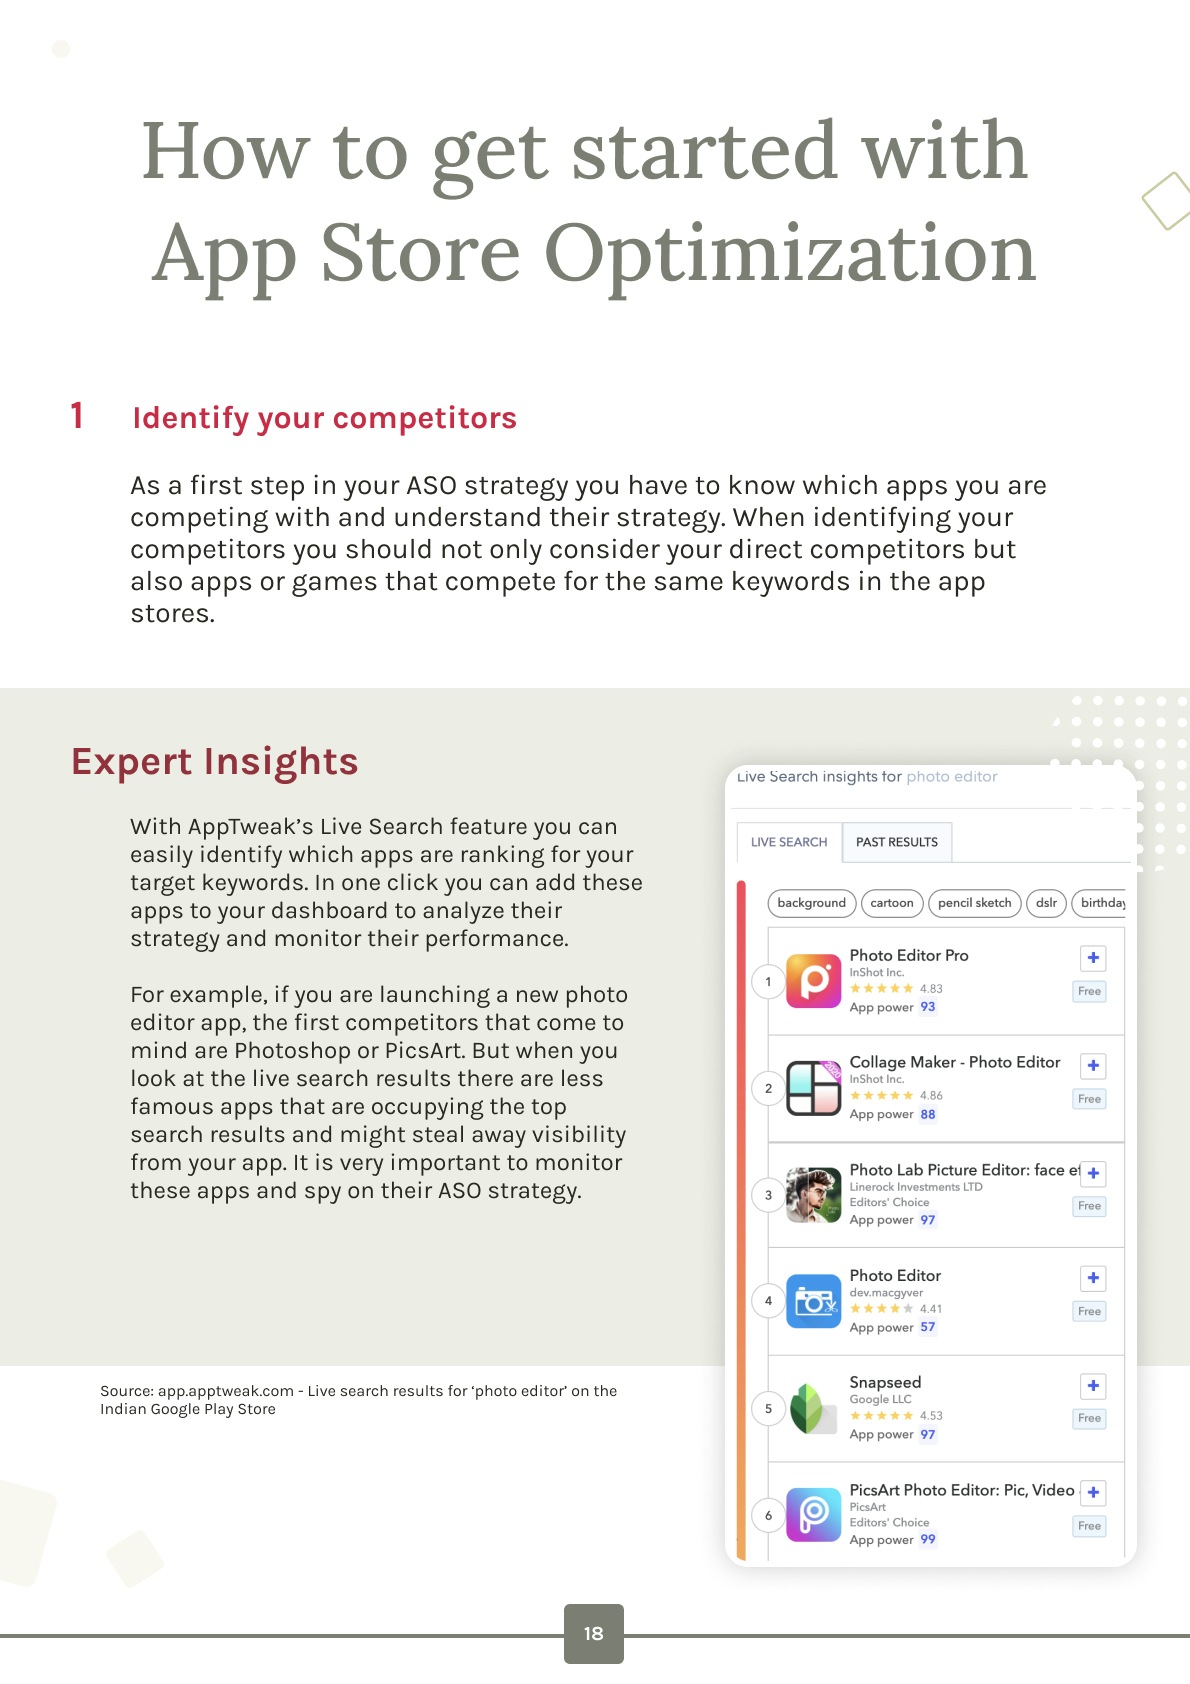 Image - App Store Optimization in India Guide - screenshot 3